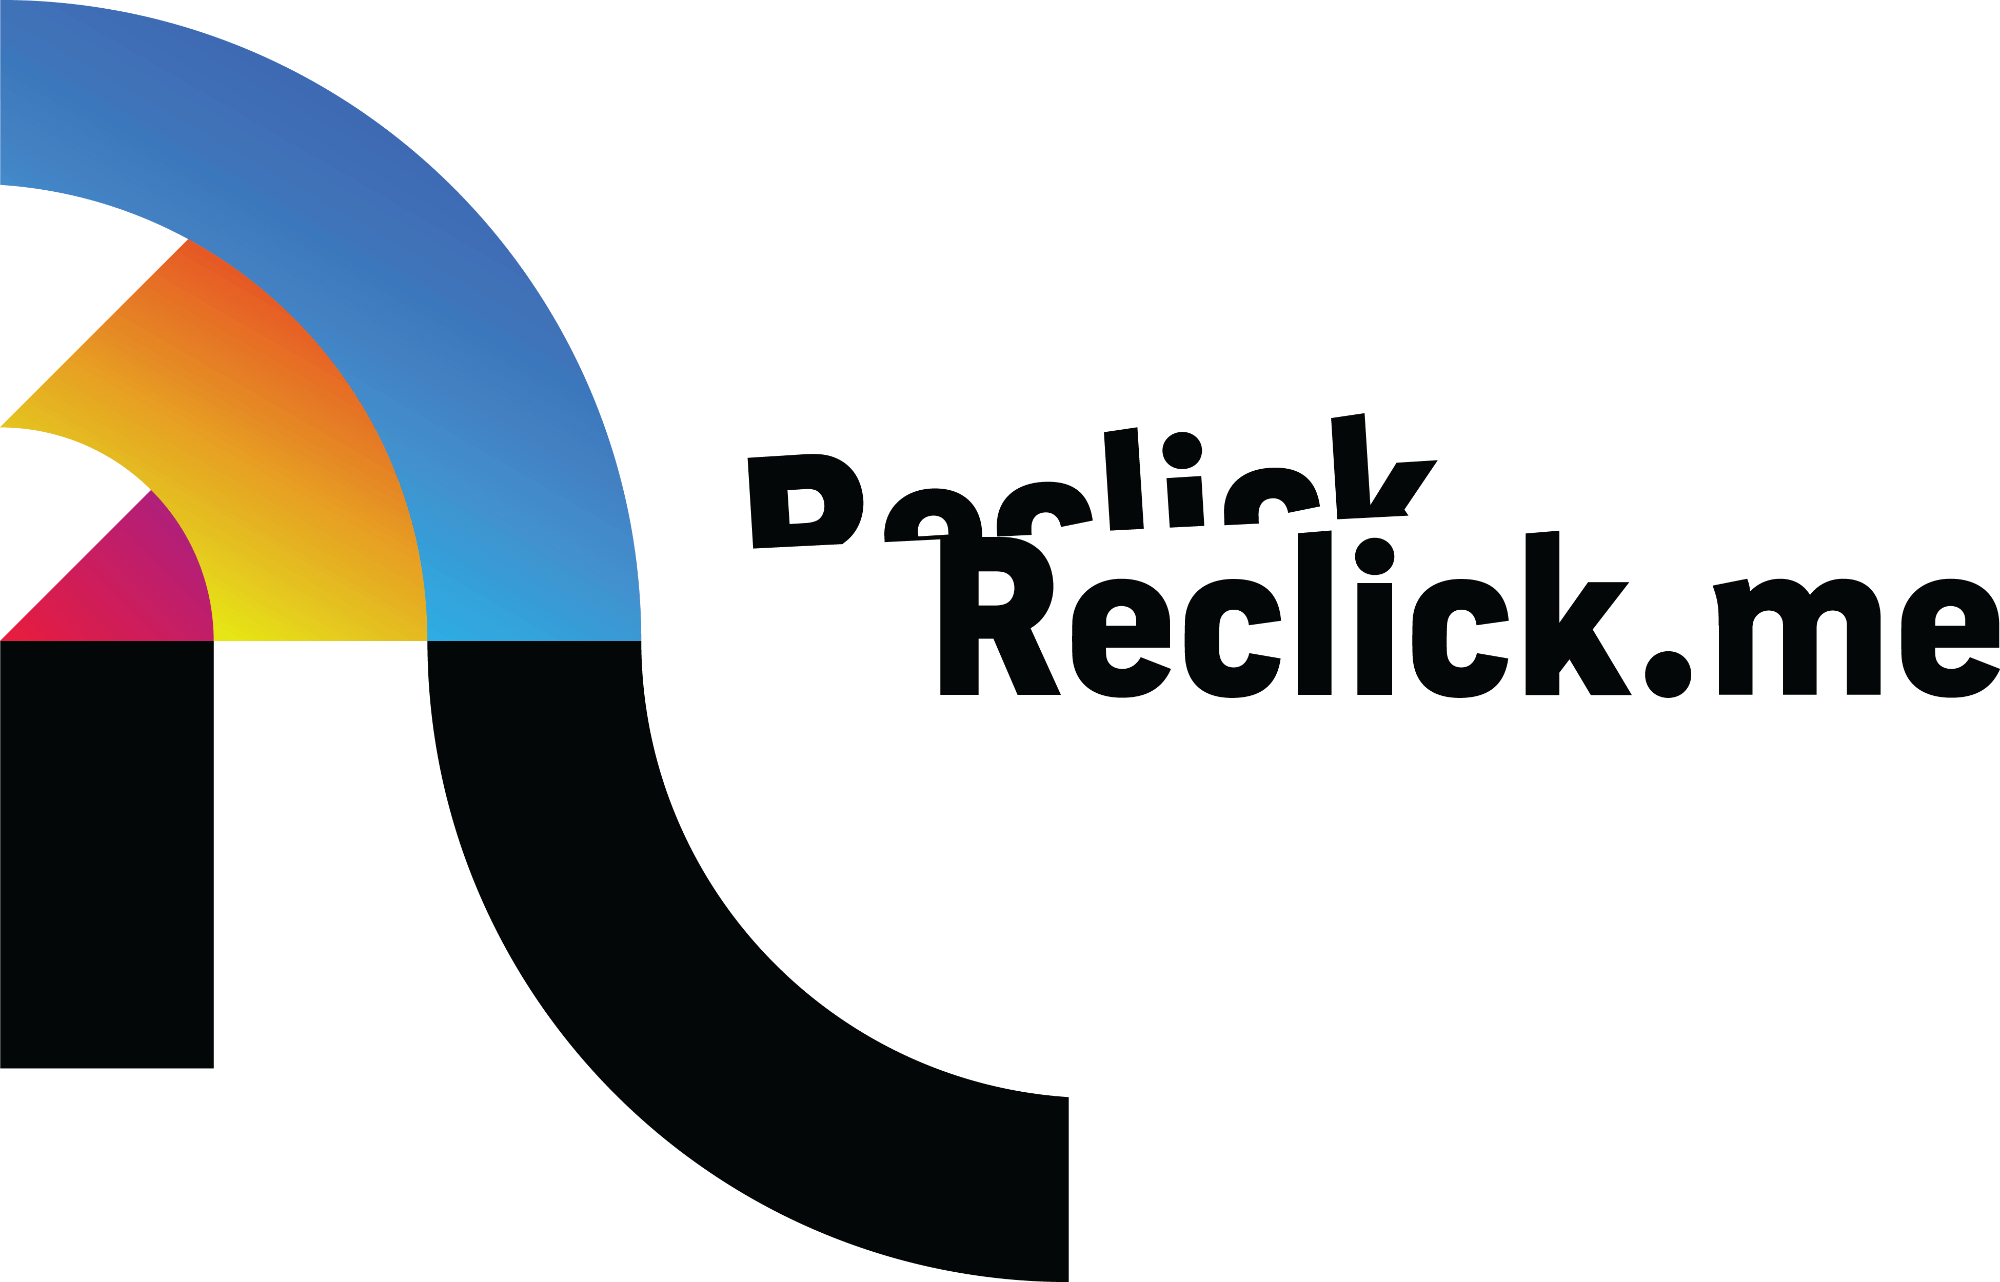 reclick me logo